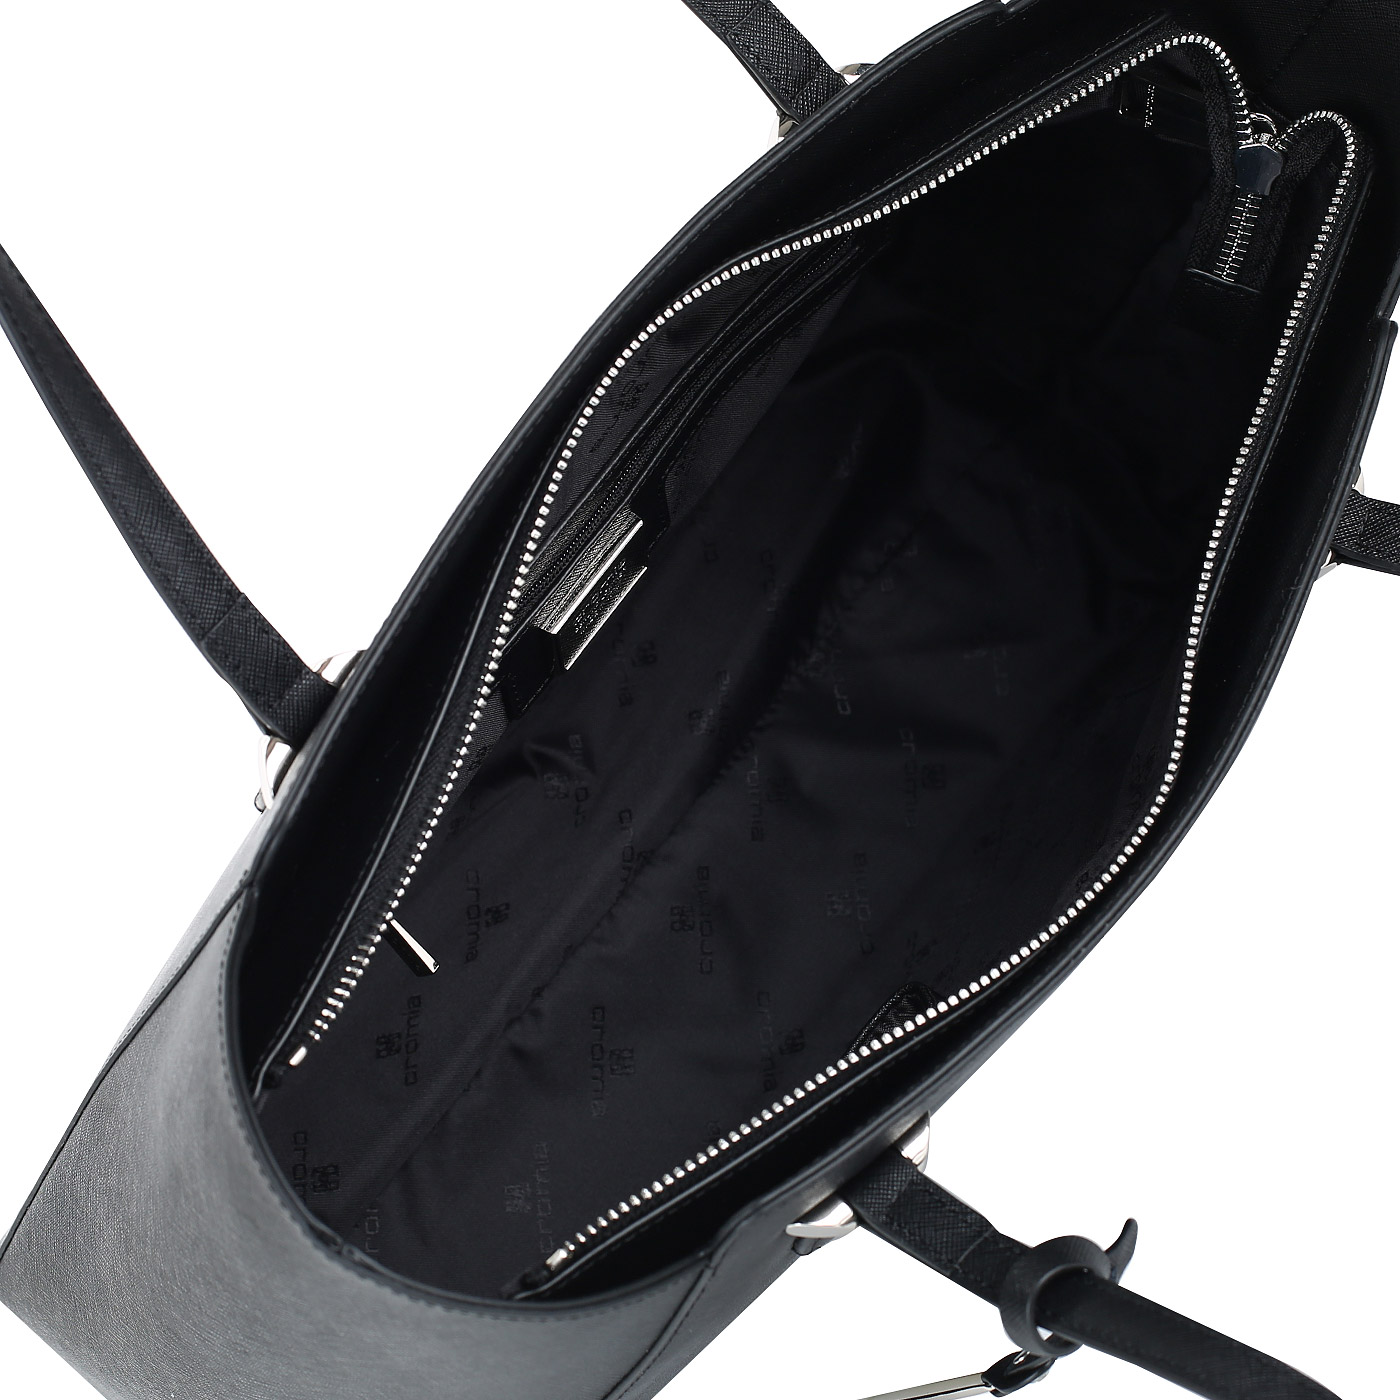 Женская сафьяновая сумка с кармашком для смартфона Cromia Perla